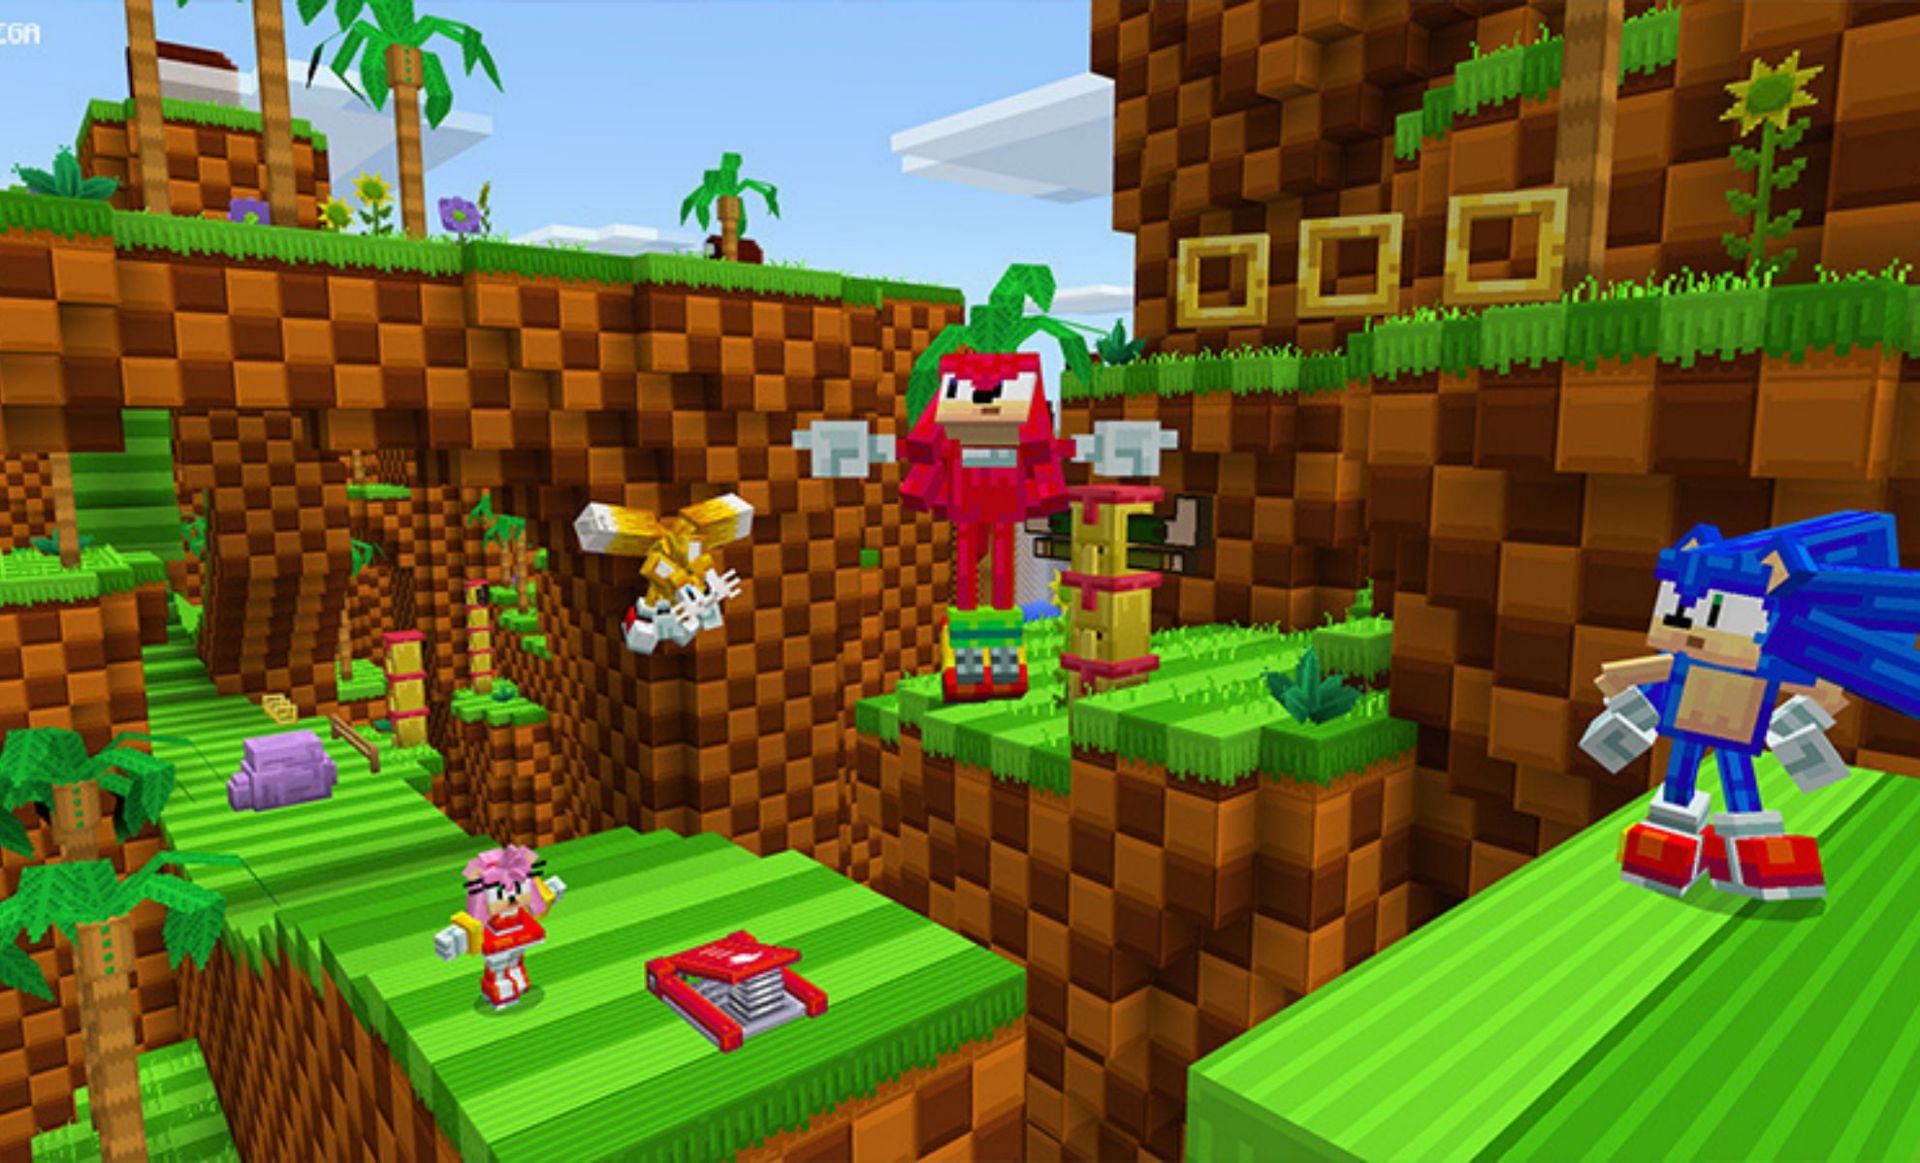 Sonic skins (Image via Mojang)